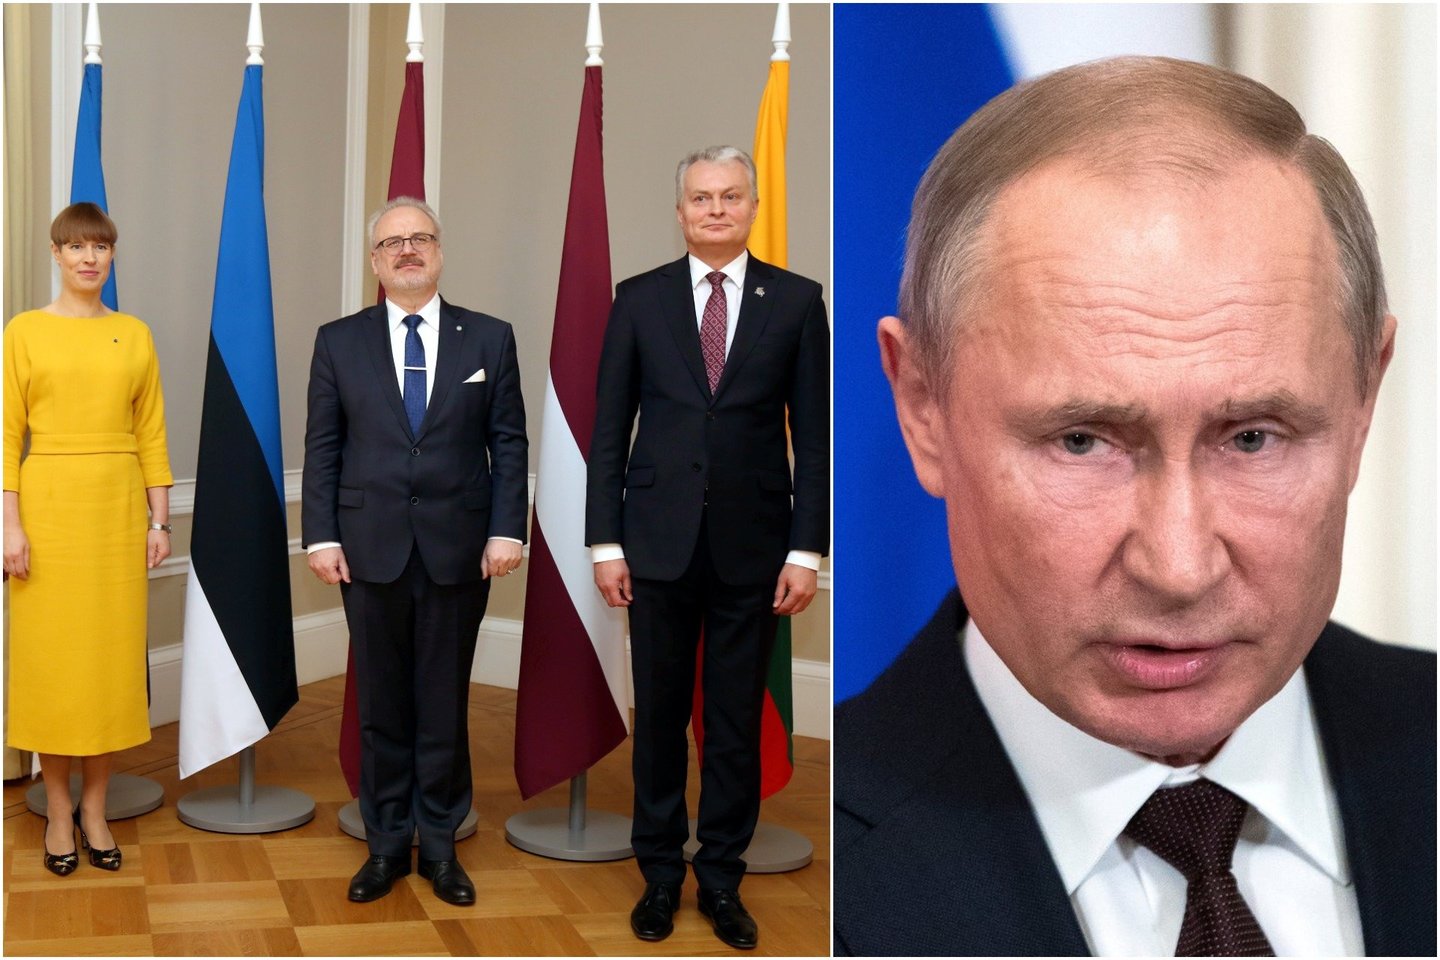  Baltijos šalių vadovai griežtai išreiškė poziciją dėl Rusijos veiksmų.<br> lrytas.lt koliažas.